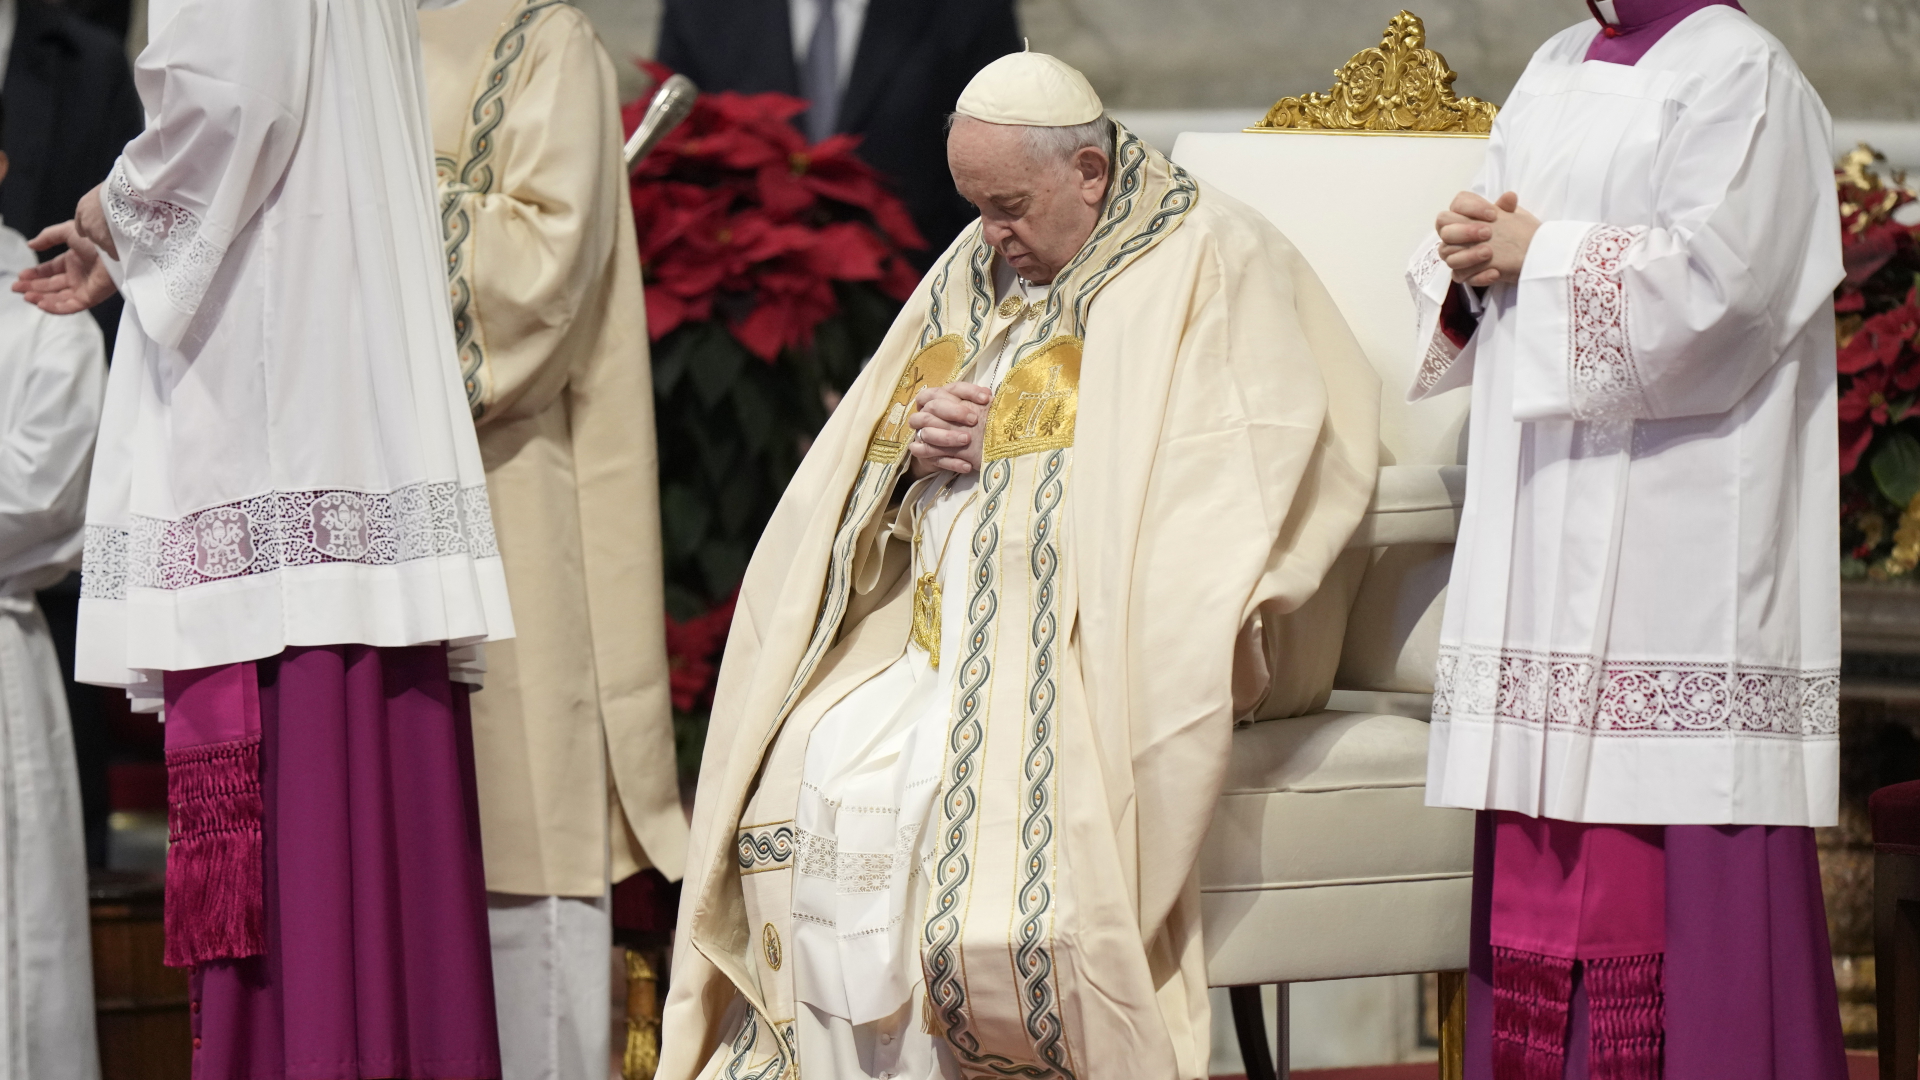 Papst Franziskus zum Weltfriedenstag: “Kümmert Euch!”